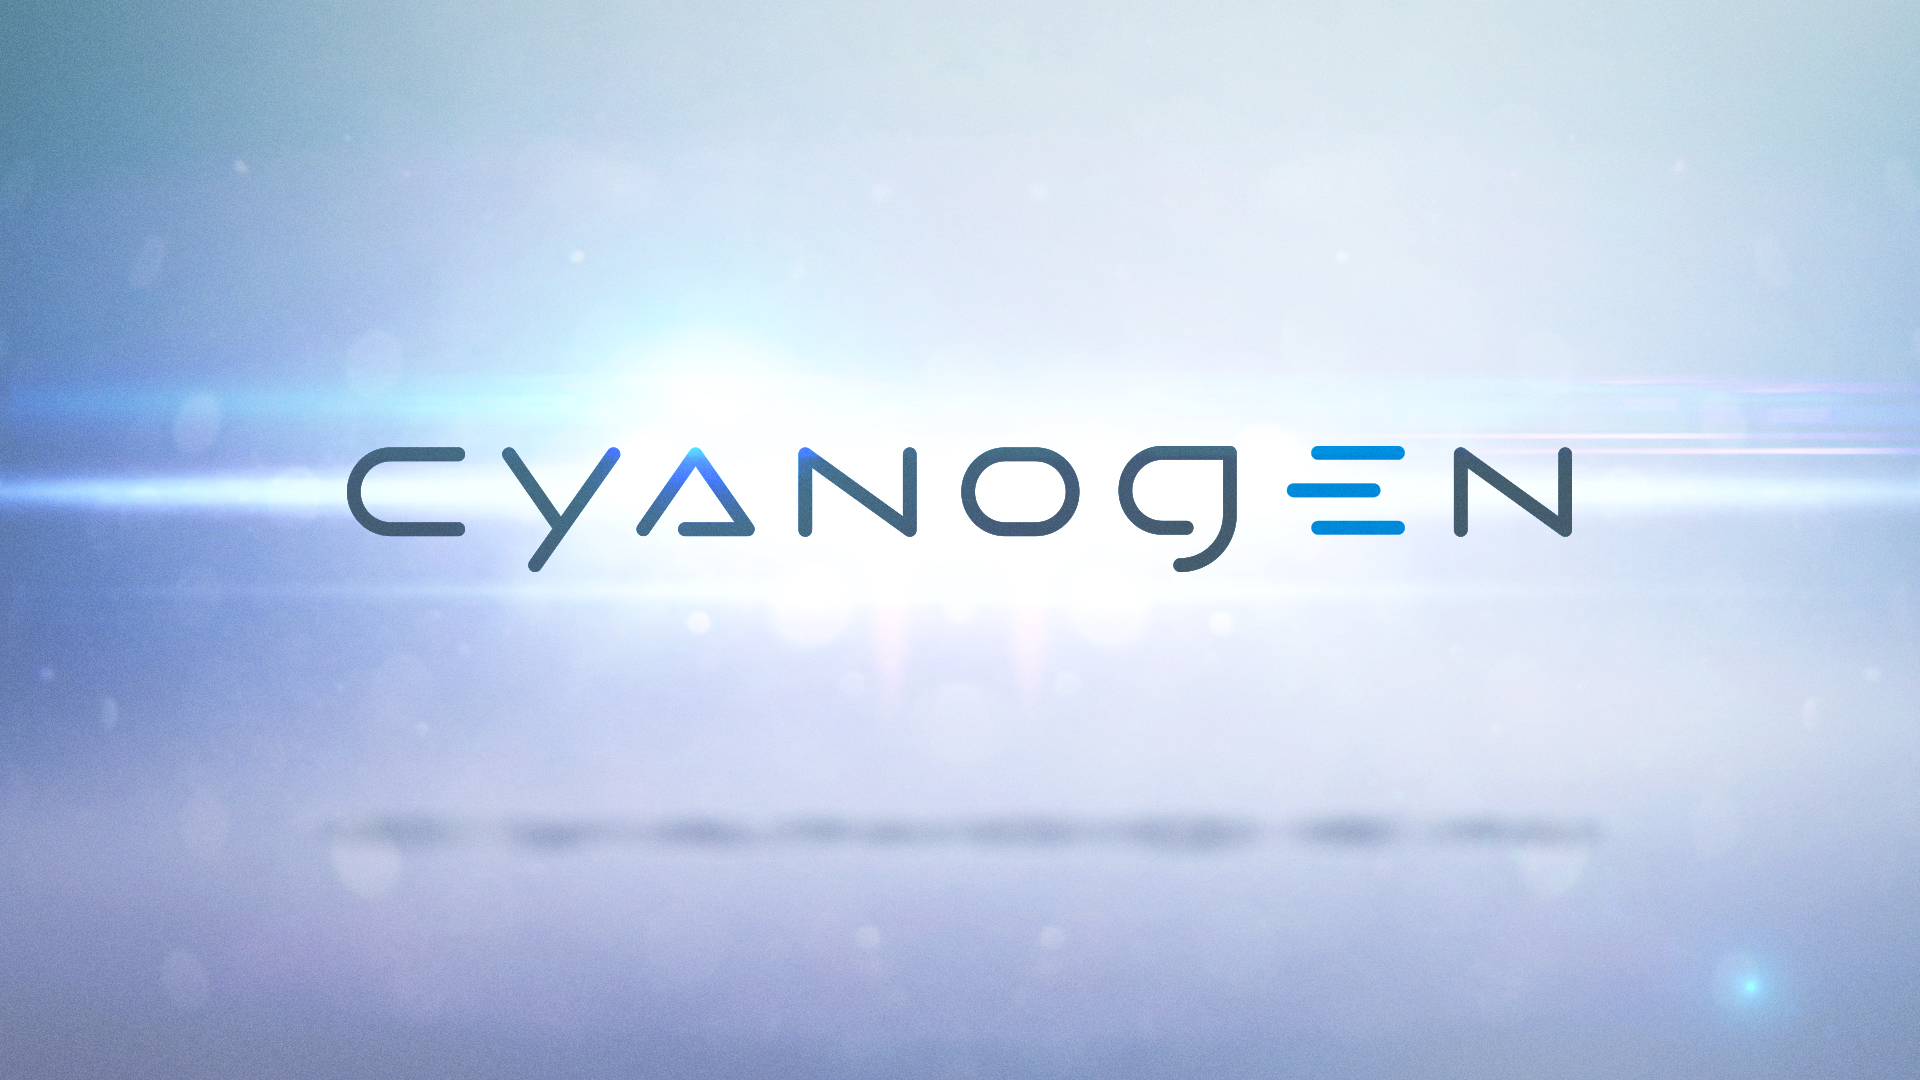 Cyanogen má přes 50 miliónů uživatelů